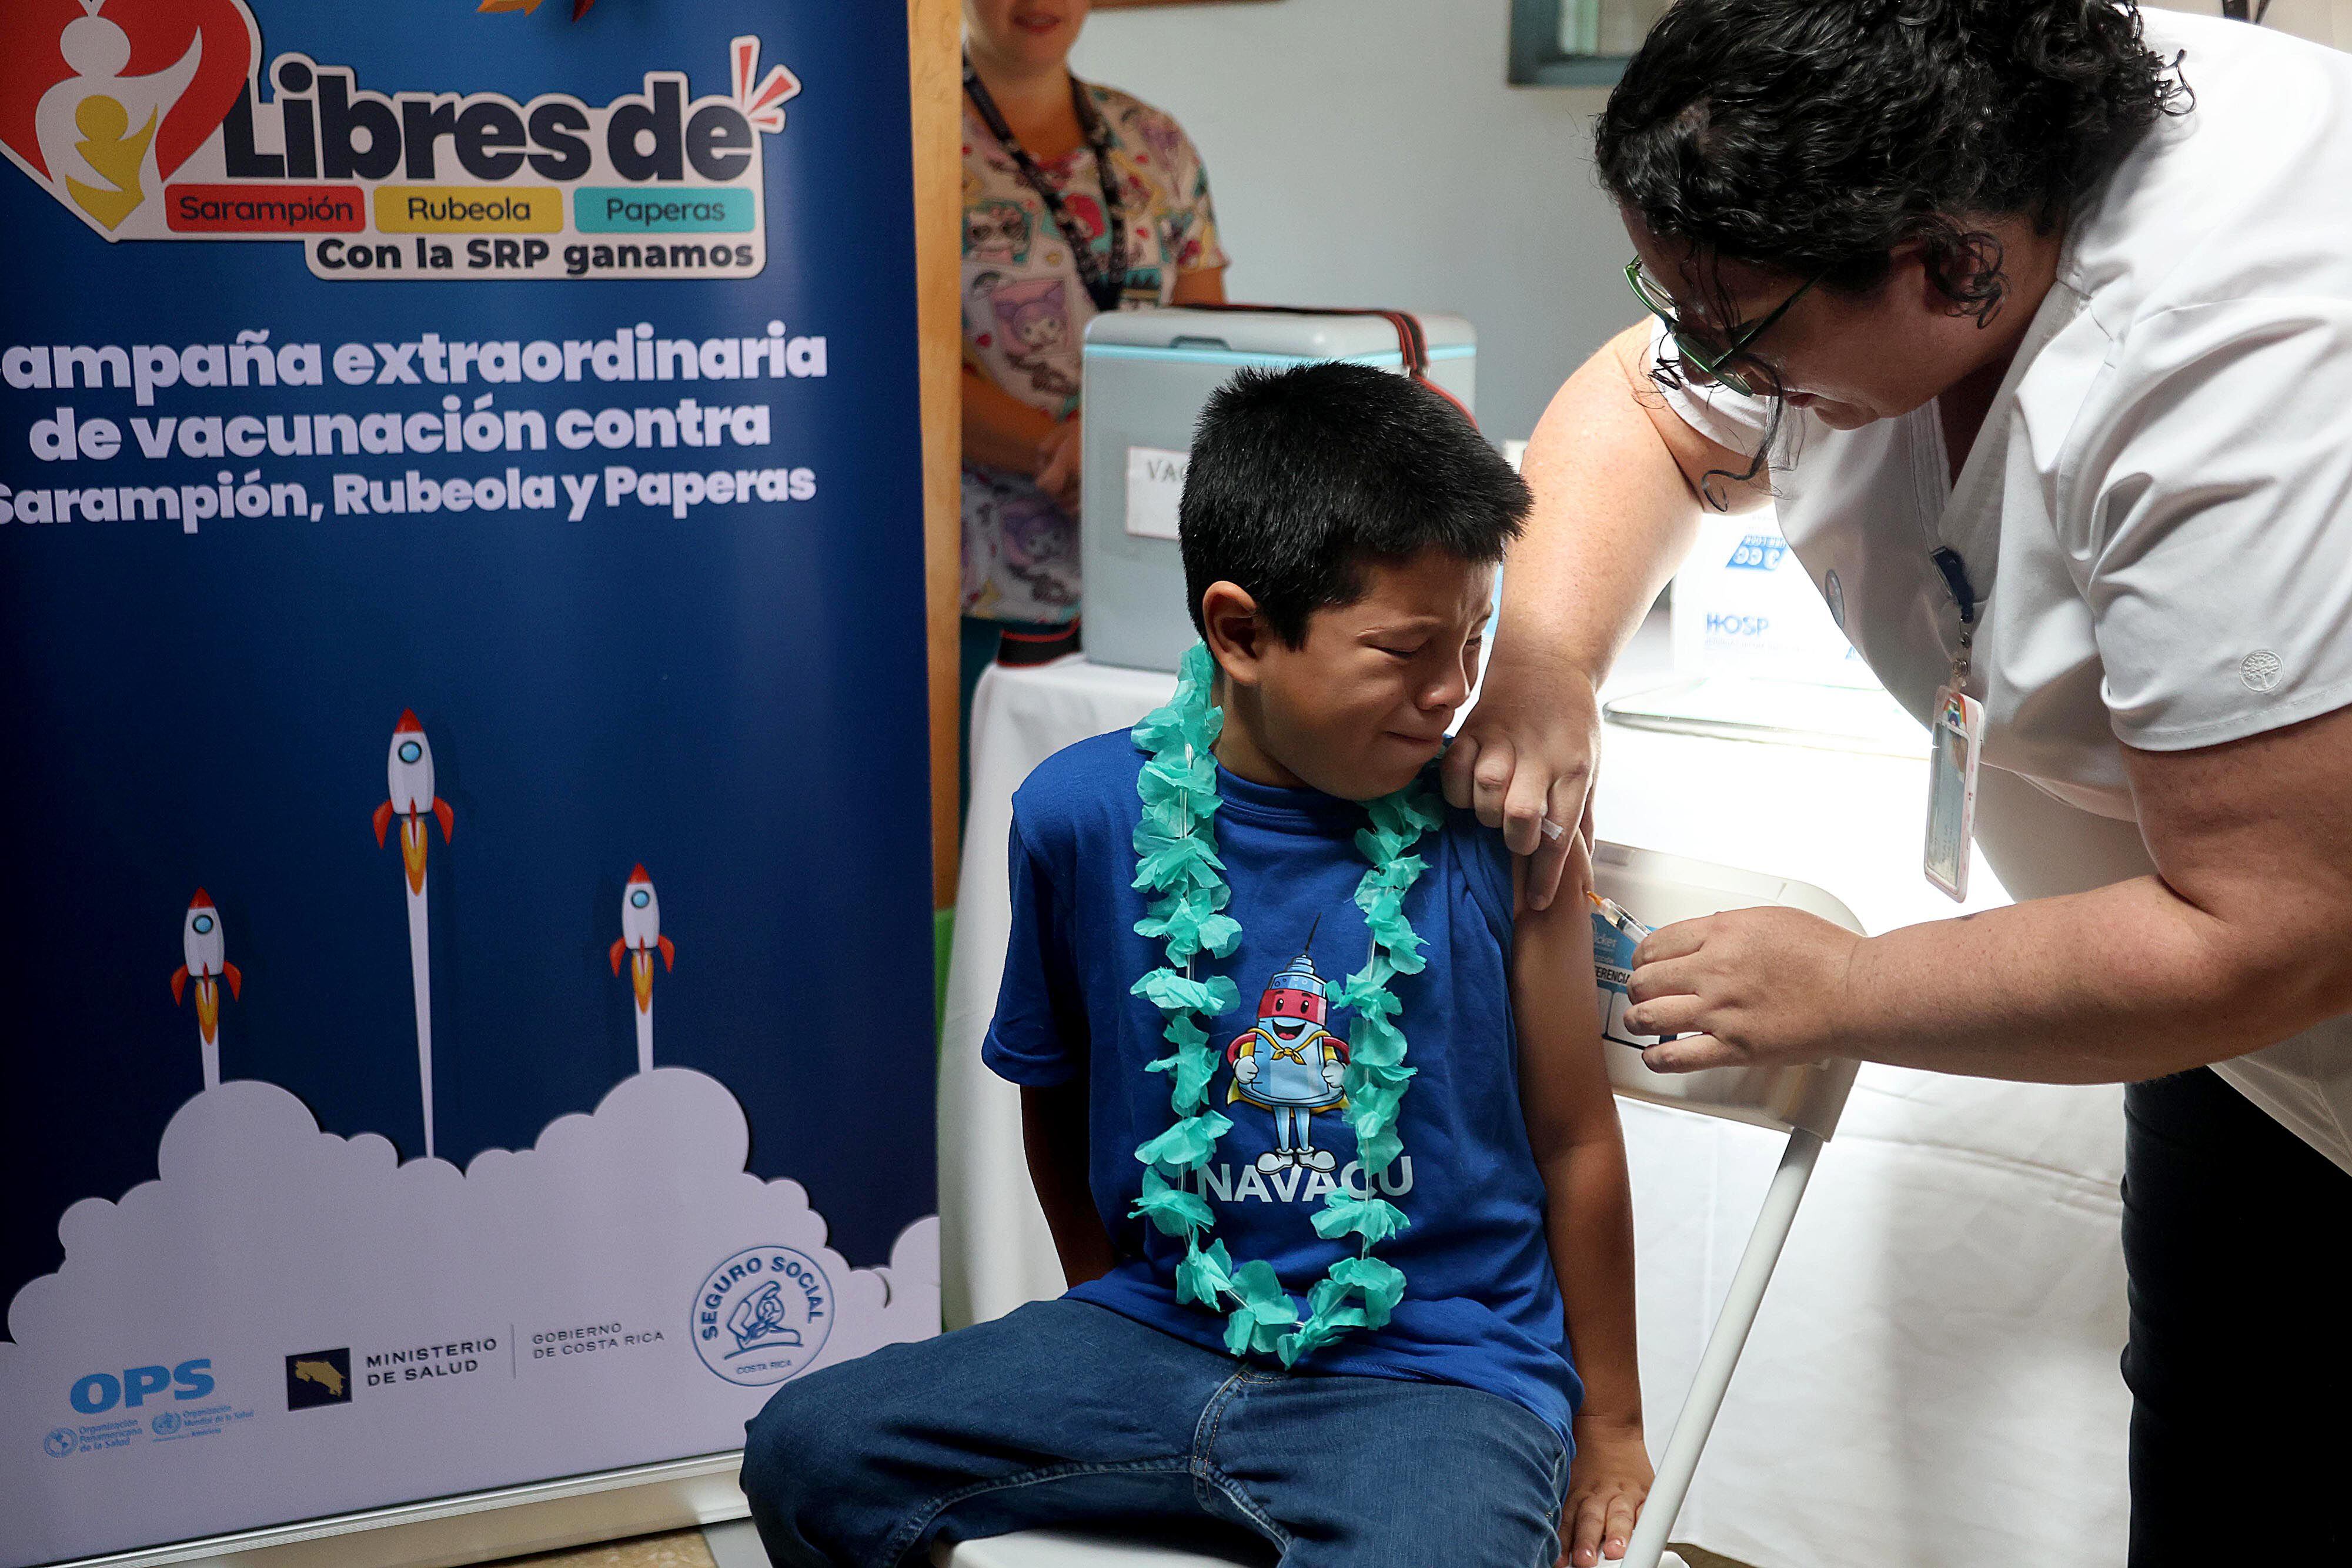 Benyamin Brenes Calderón, de 7 años, fue uno de los primeros niños en recibir la vacuna contra sarampión, rubéola y paperas el 1 de abril, en el Cen-Cinái de Guadalupe, en Goicoechea. Se la aplicó la técnica en atención primaria, Amalia Piedra.